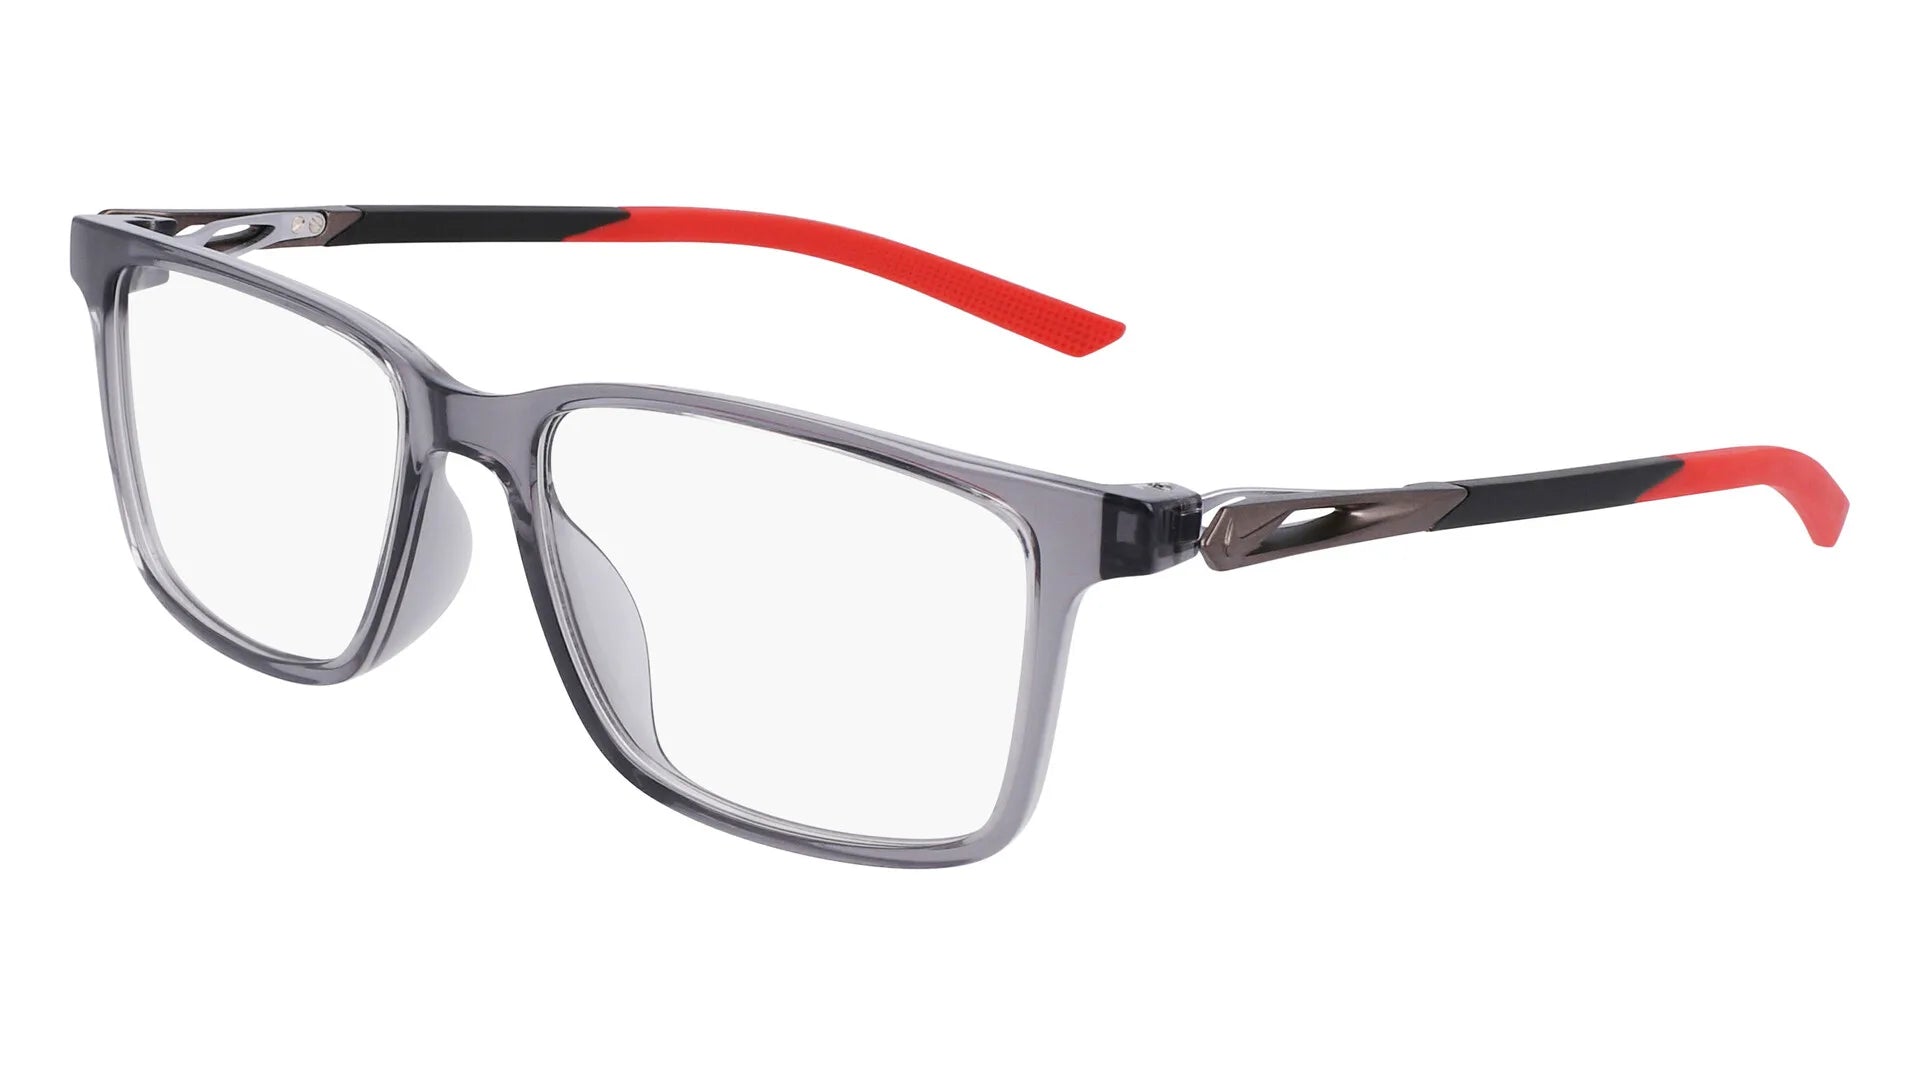 Nike 7145 Eyeglasses Dark Grey / University Red